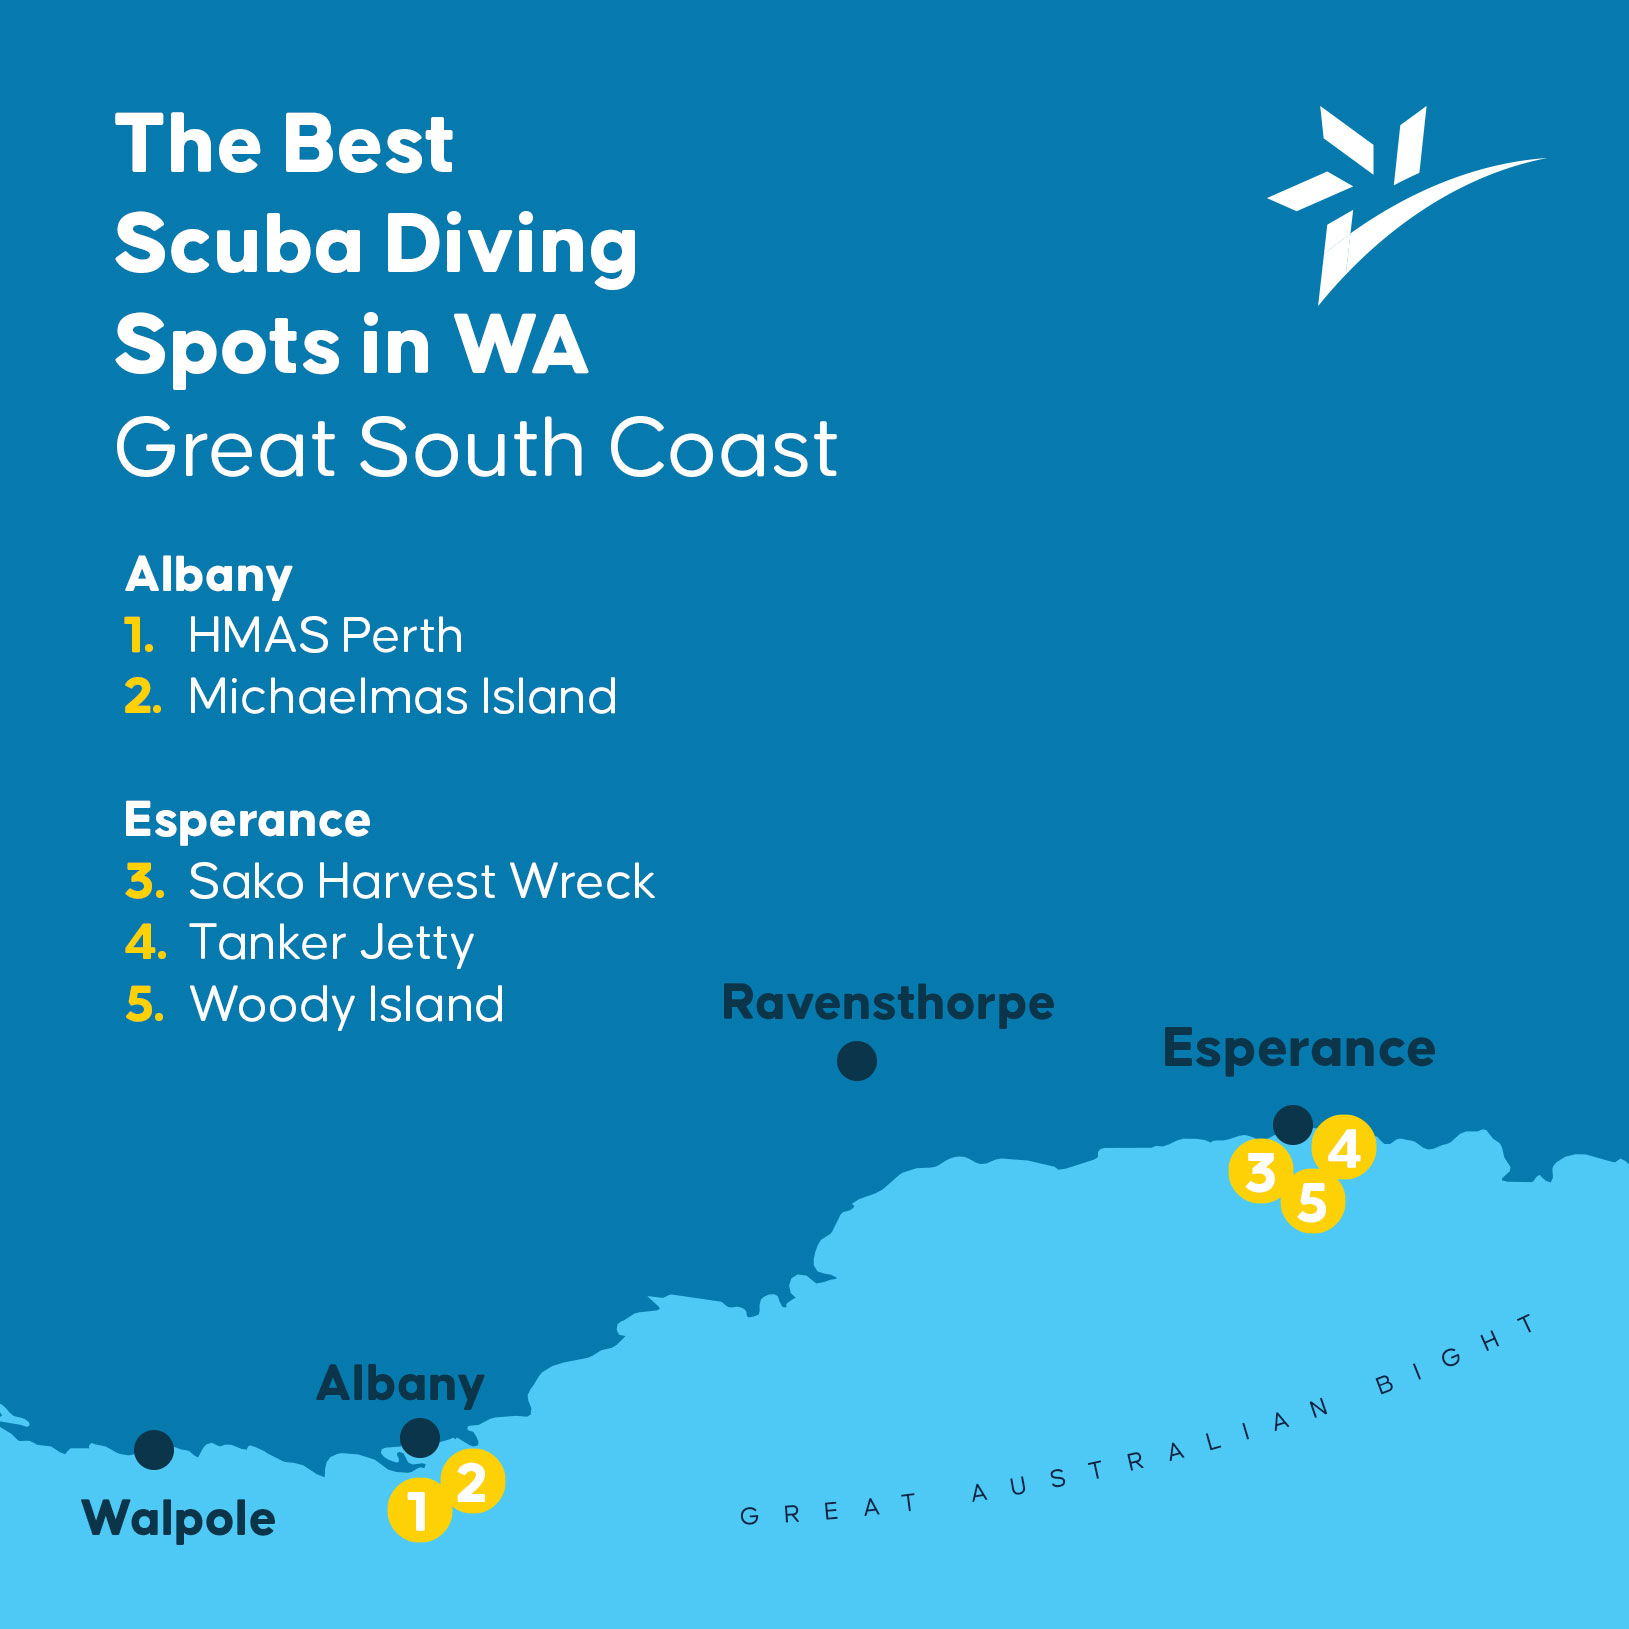 The Best Sruba Diving Spots in WA Great South Coast.